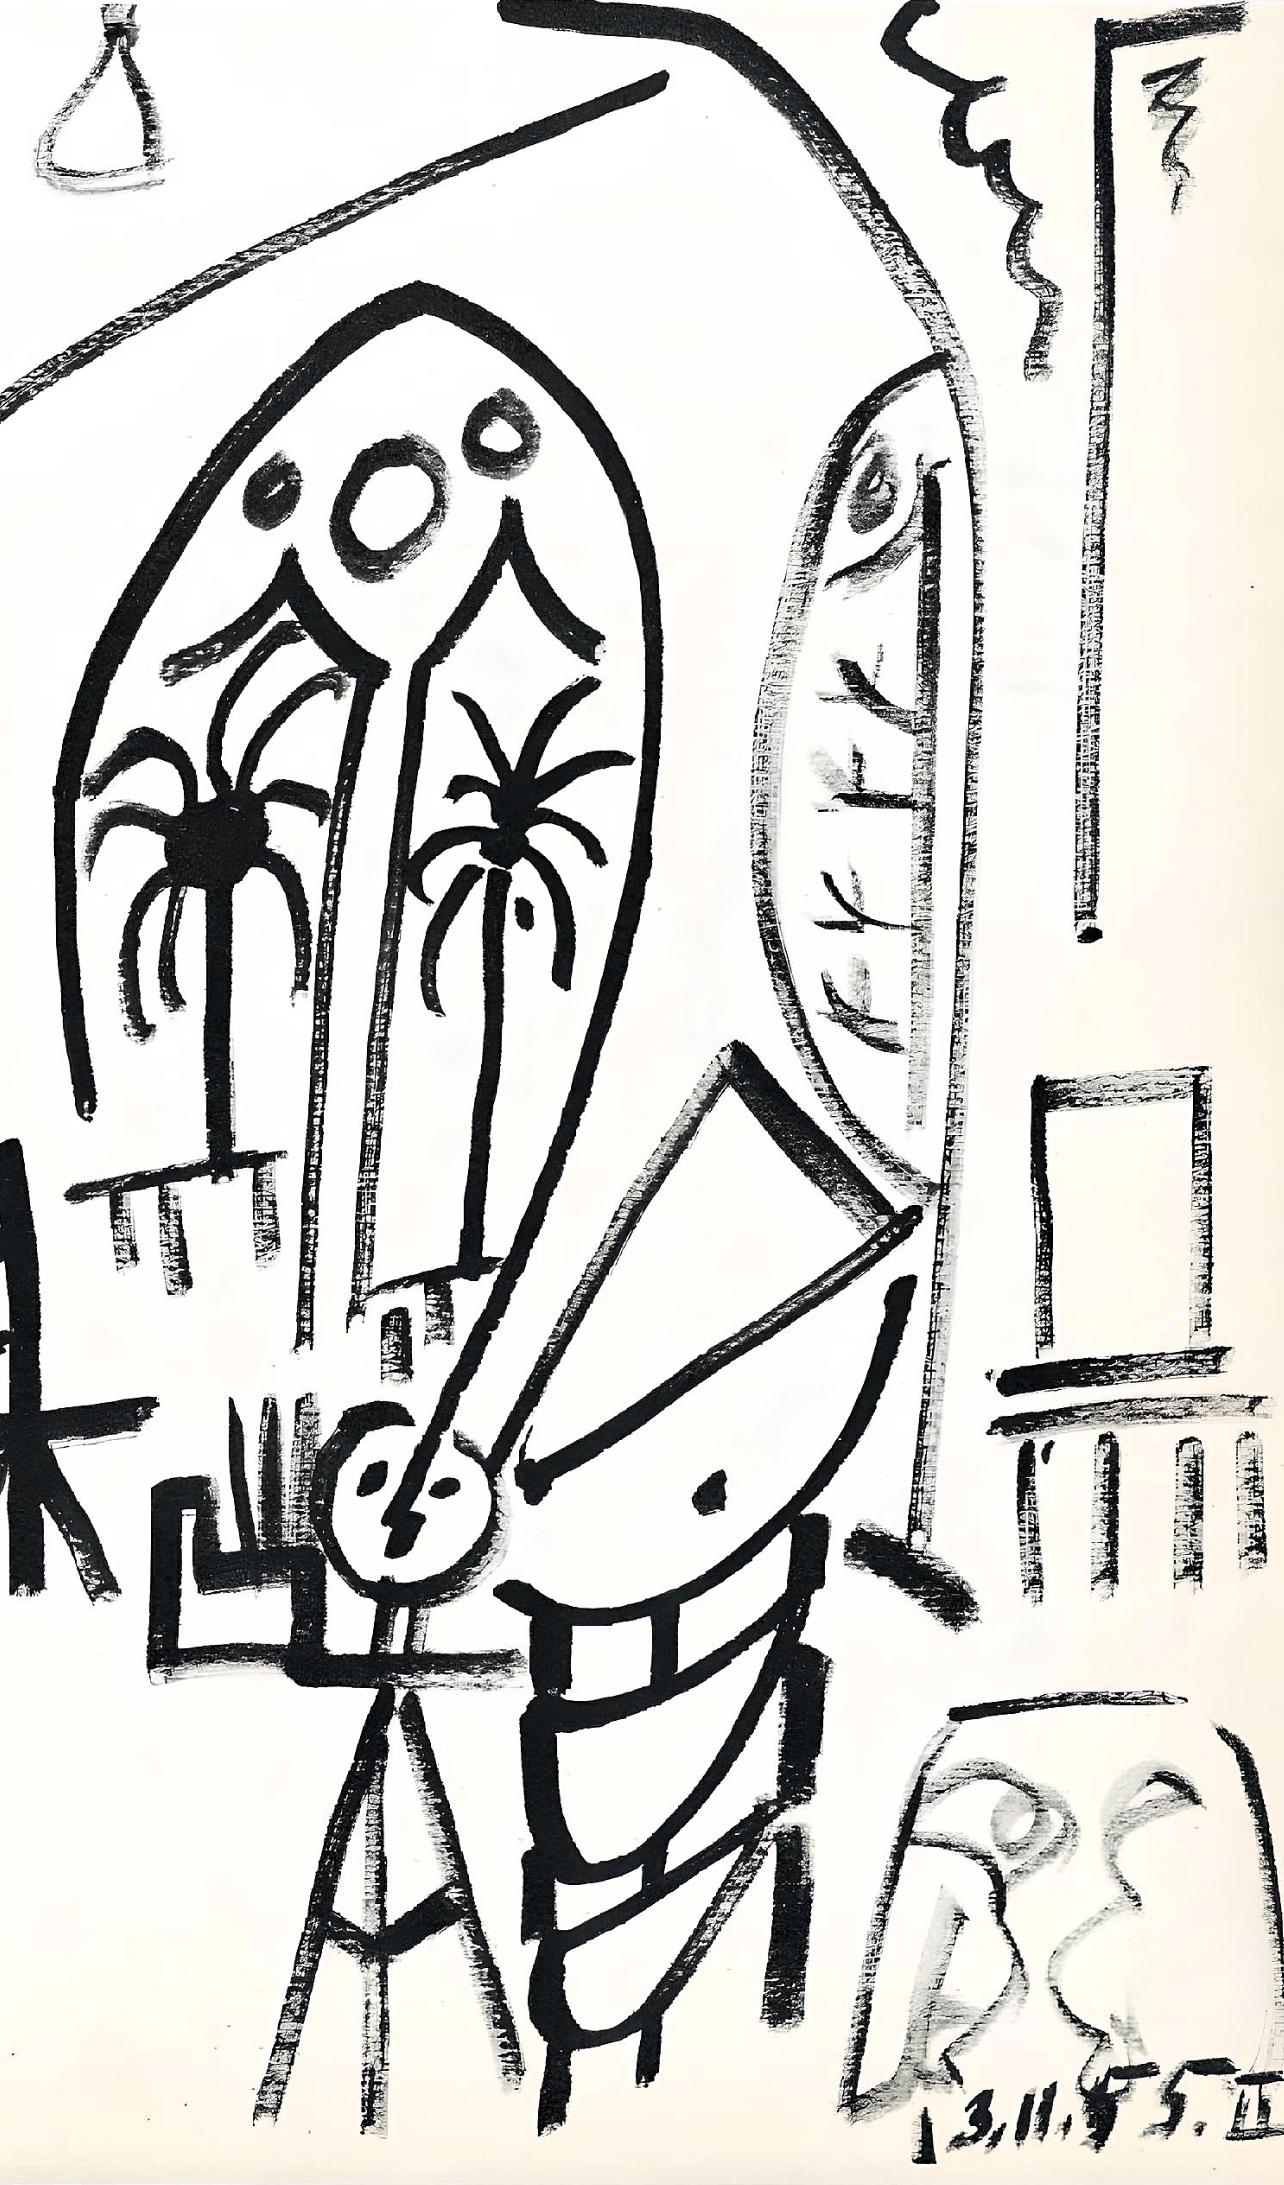 Picasso, 13.11.55, Carnet de la Californie (Cramer 101), après - Print de Pablo Picasso